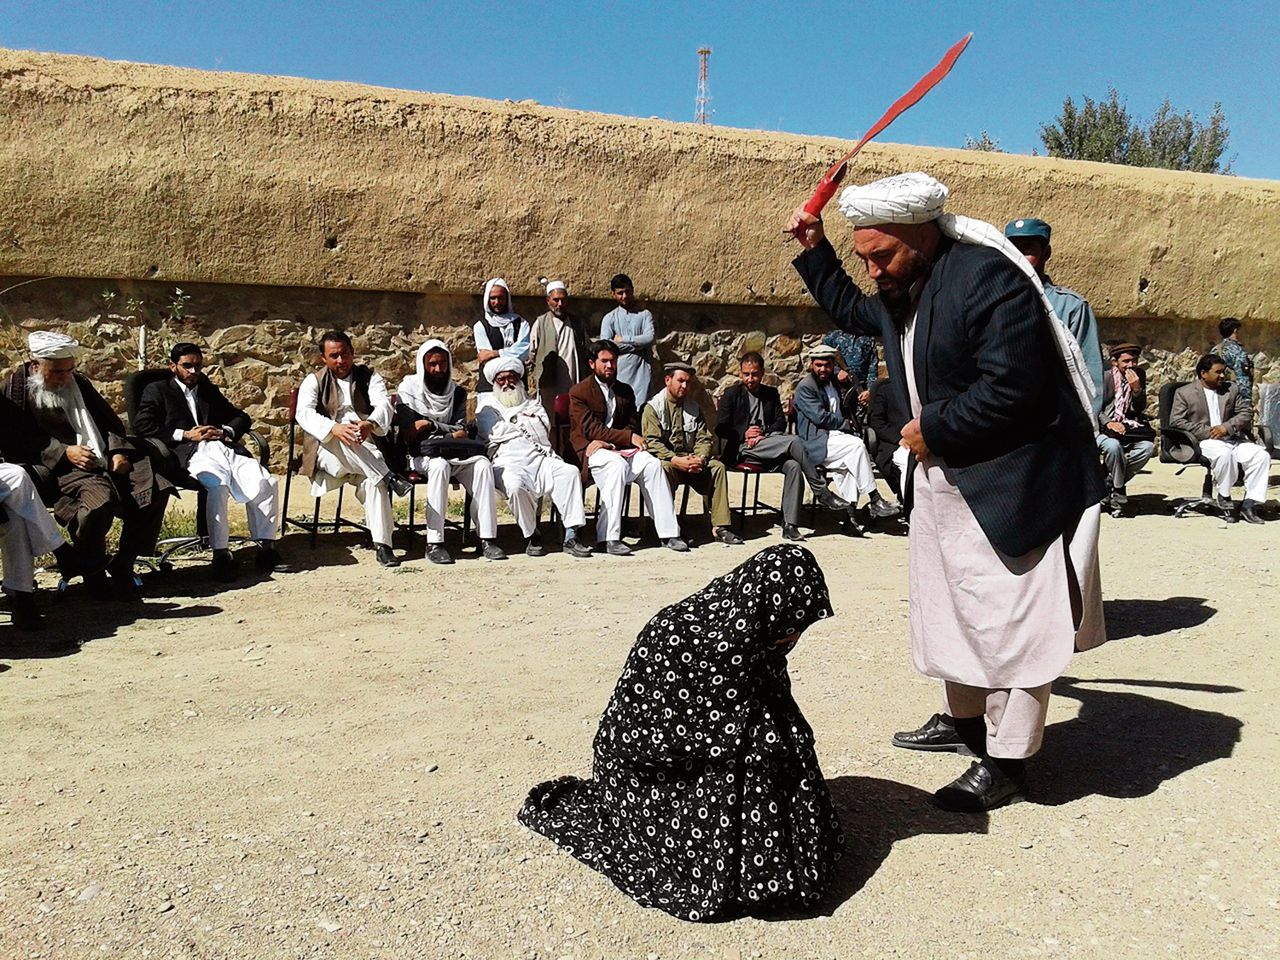 Một phụ nữ Afghanistan đang bị trừng phạt bằng bạo lực tại nơi công cộng - Ảnh: Khalfan S4